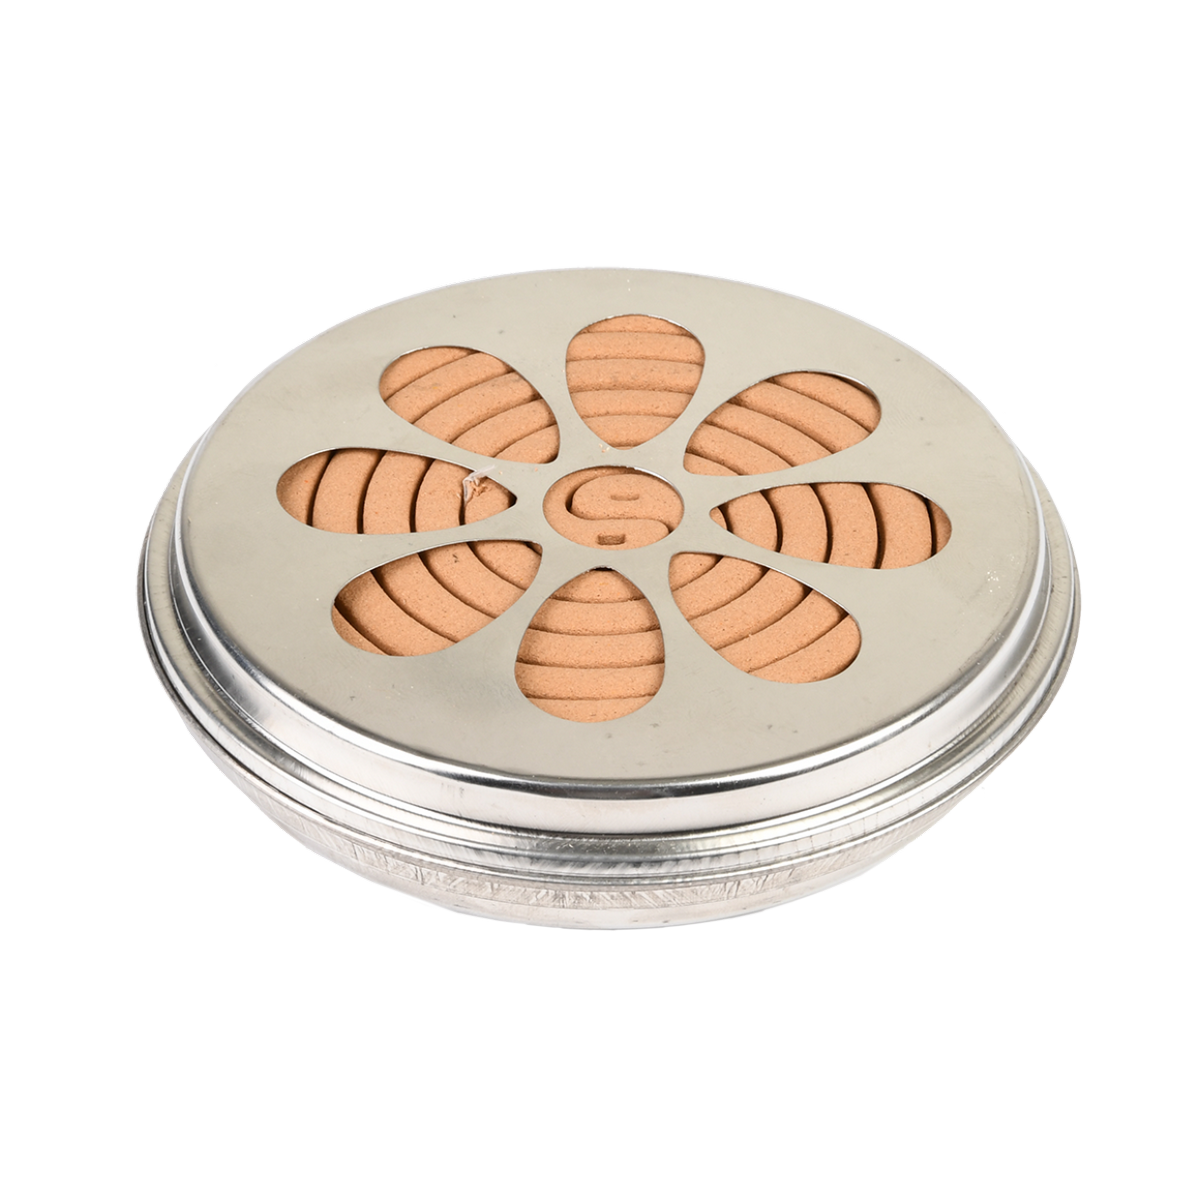 Spirale anti-moustique - kit de 2 spirales Citronnelle + diffuseur